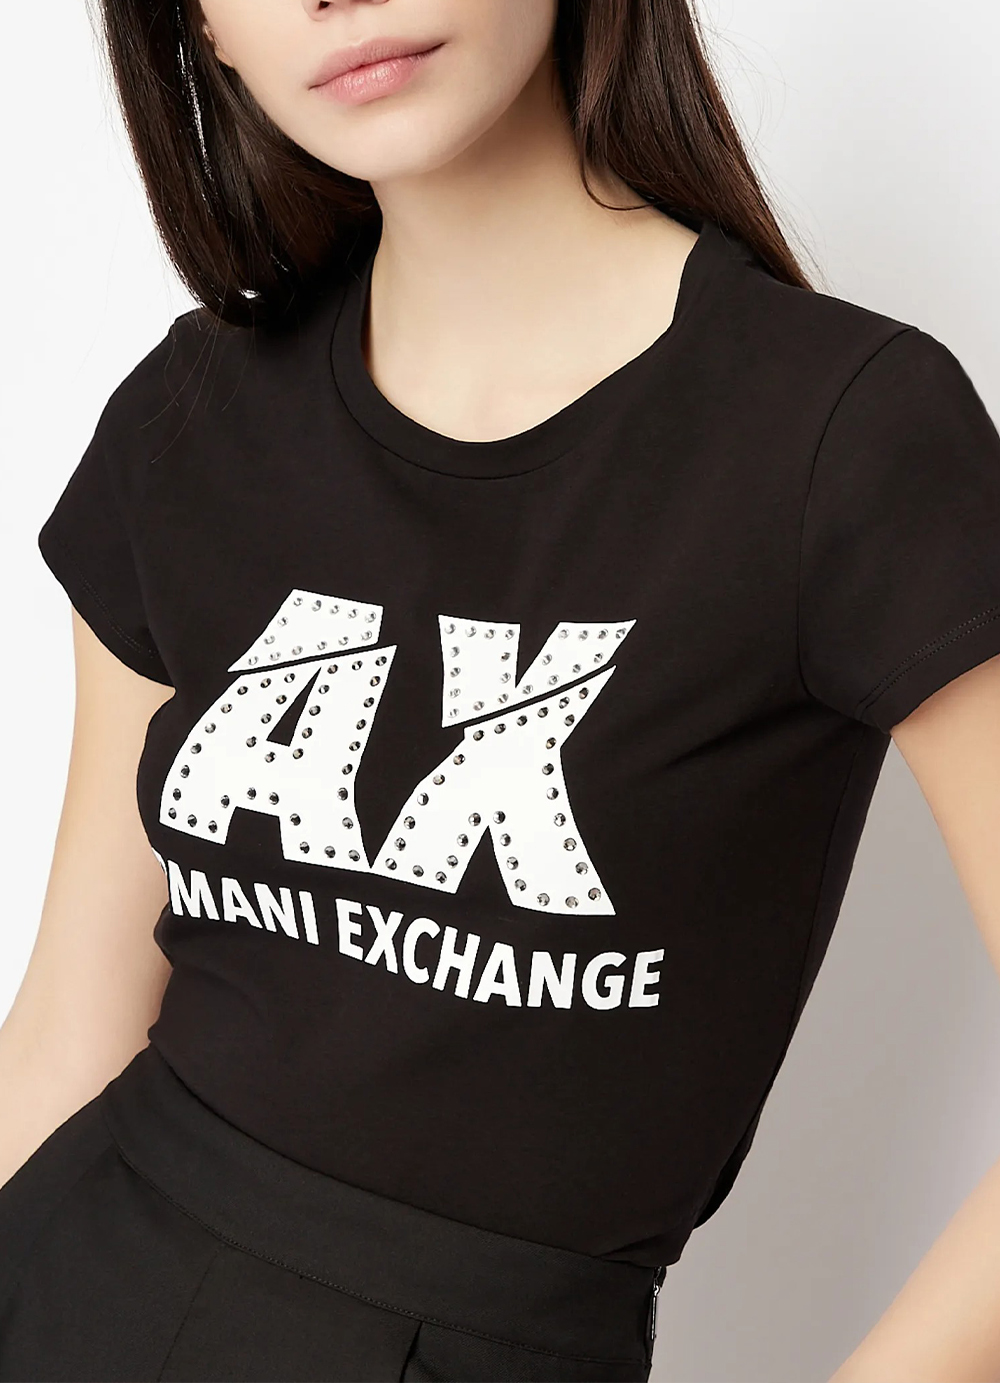 Γυναικεία Μπλούζα ARMANI EXCHANGE 8NYT86-Y8C7Z-1200 Μαύρη